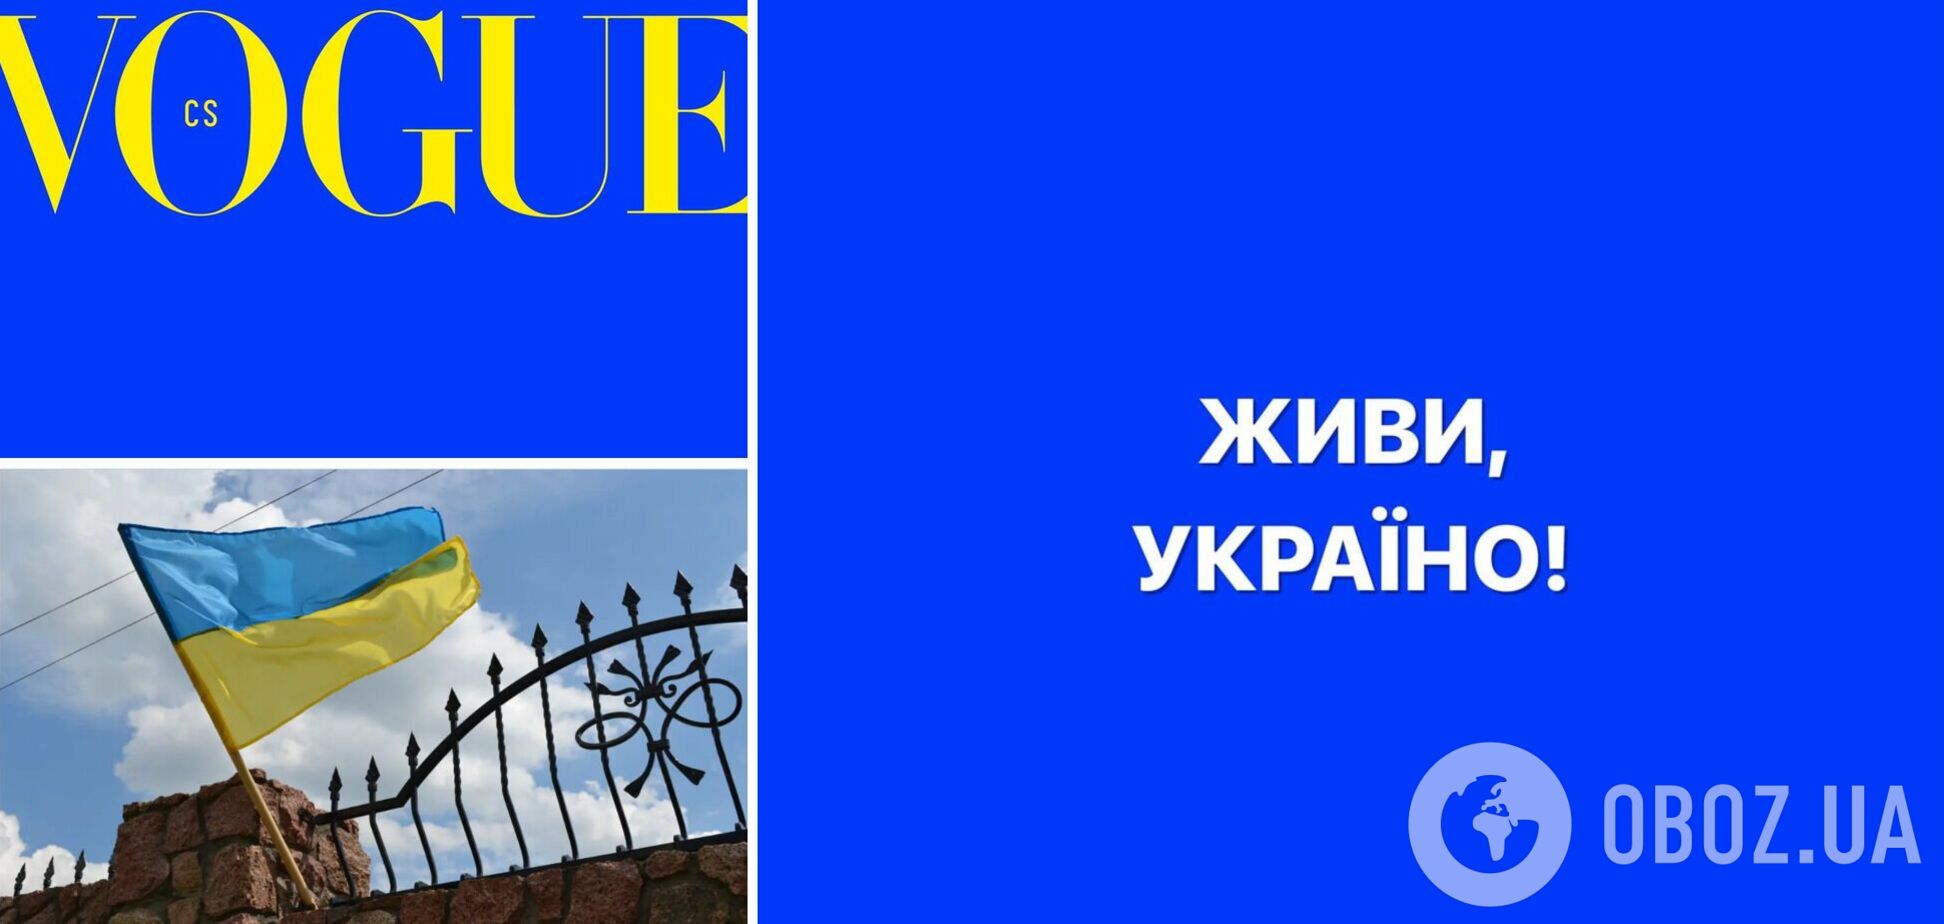 Vogue Czechoslovakia впервые в истории выпустил номер без фото на обложке в знак солидарности с Украиной